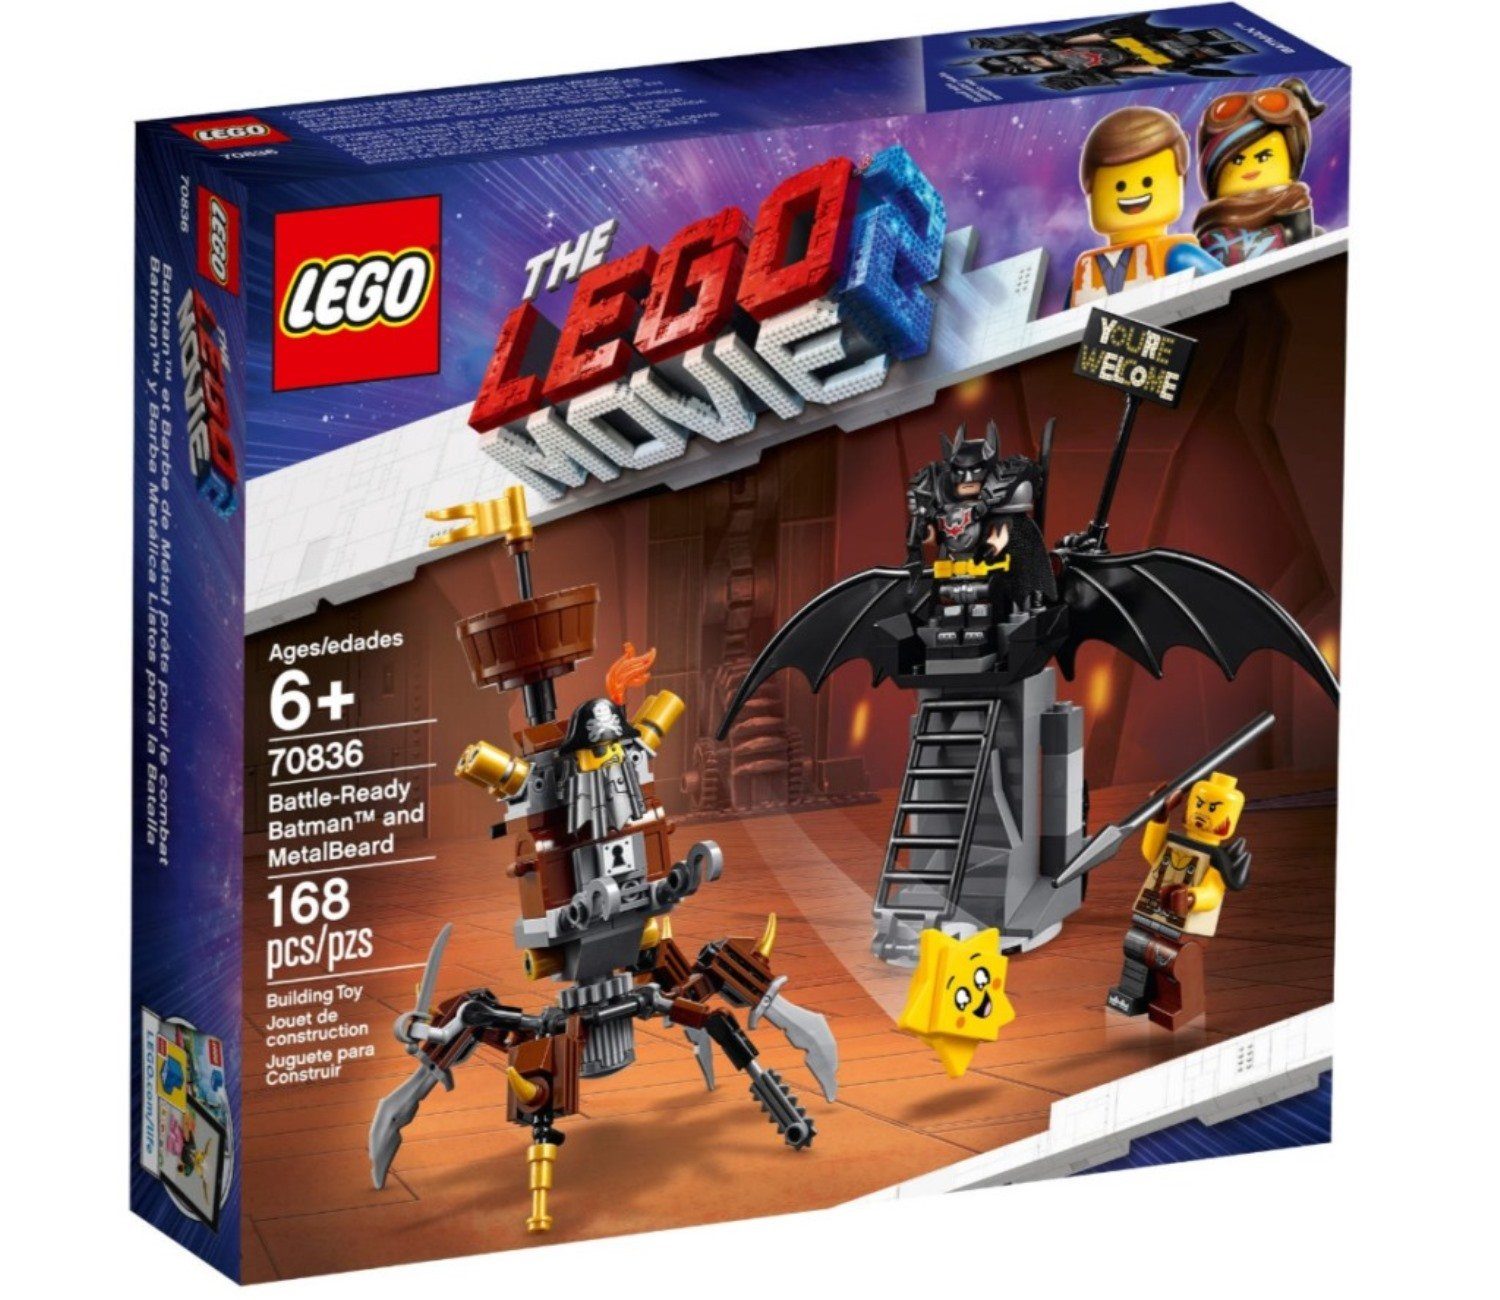 LEGO® Konstruktions-Spielset »70836 THE LEGO® MOVIE 2 Set Piraten-Set«,  Einsatzbereiter Batman und EisenBart